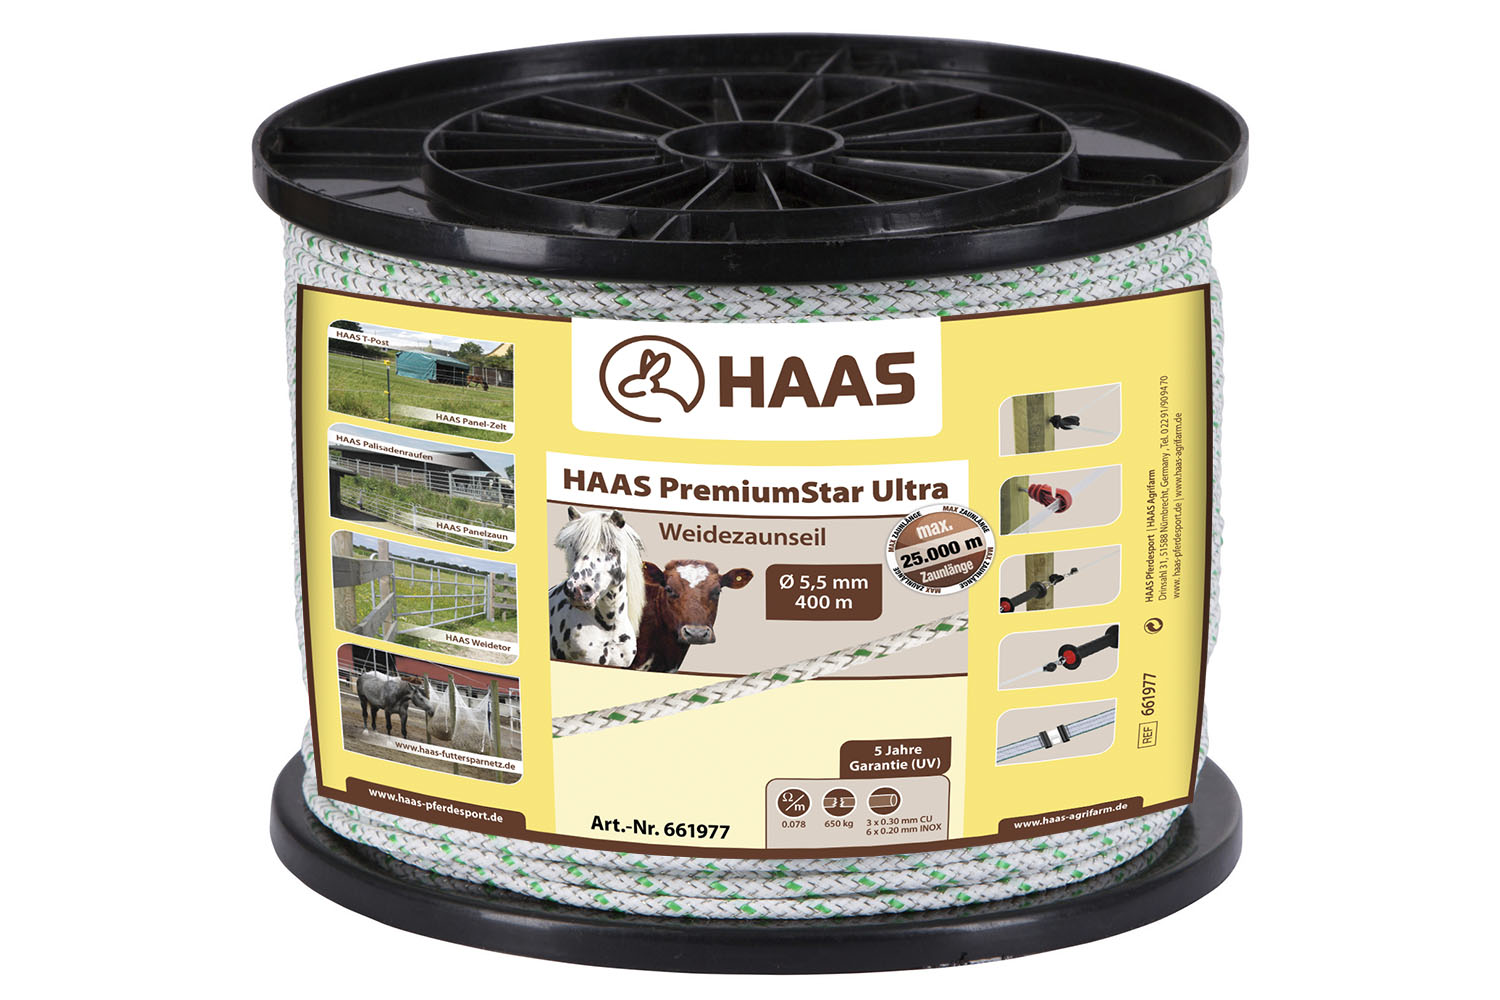 HAAS PremiumStar Ultra Weidezaunseil